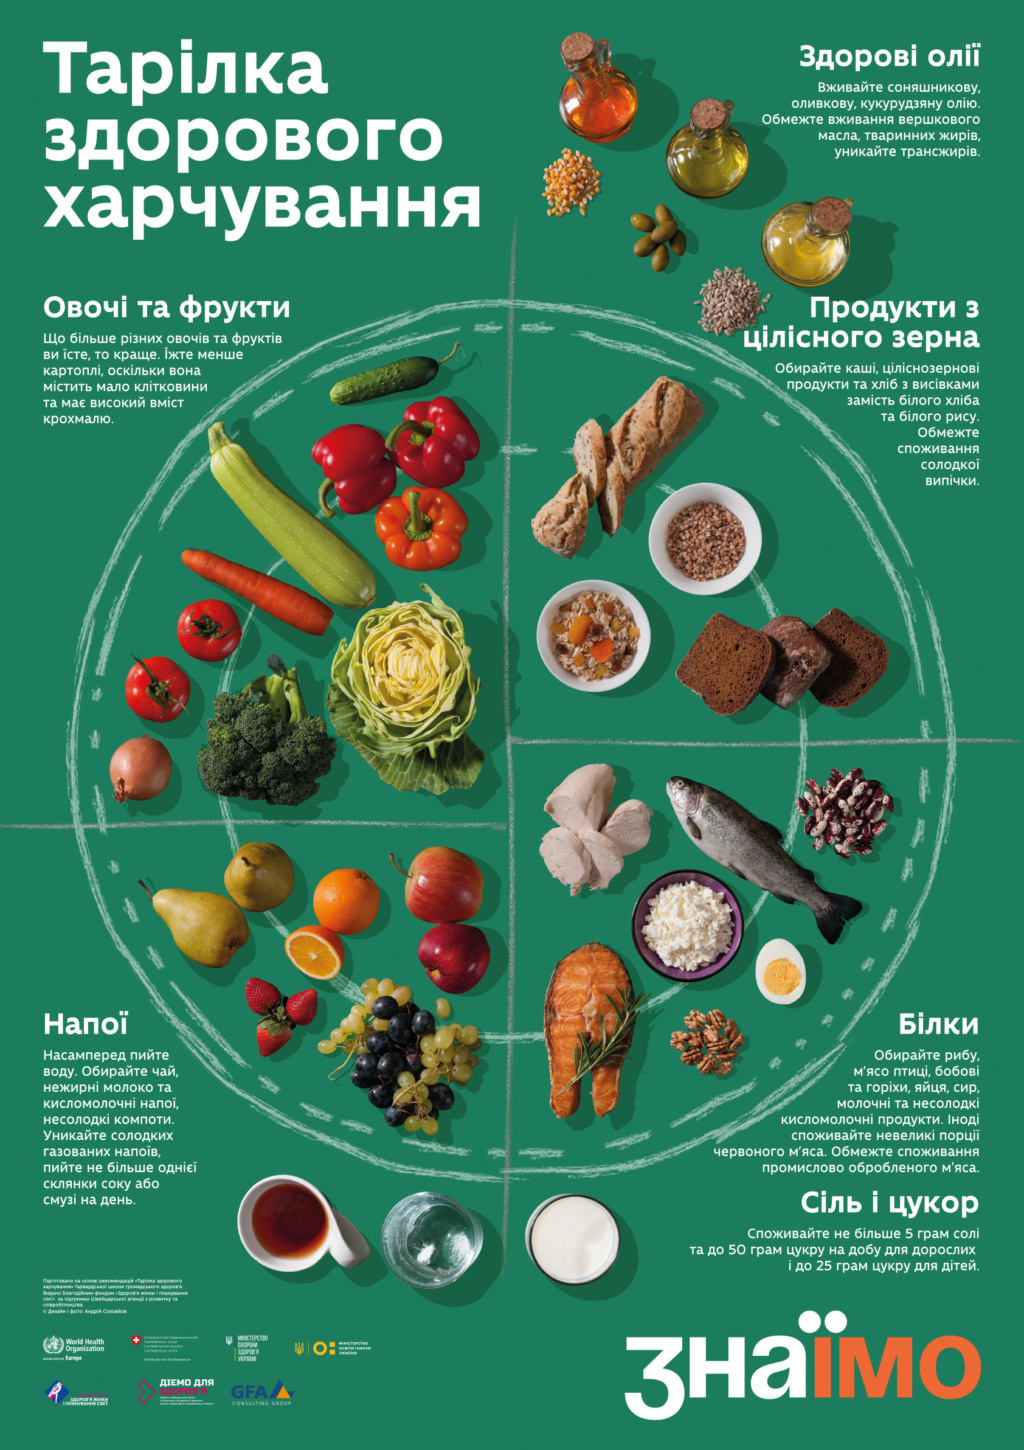 Постер «Тарілка здорового харчування» Gfa_hf10